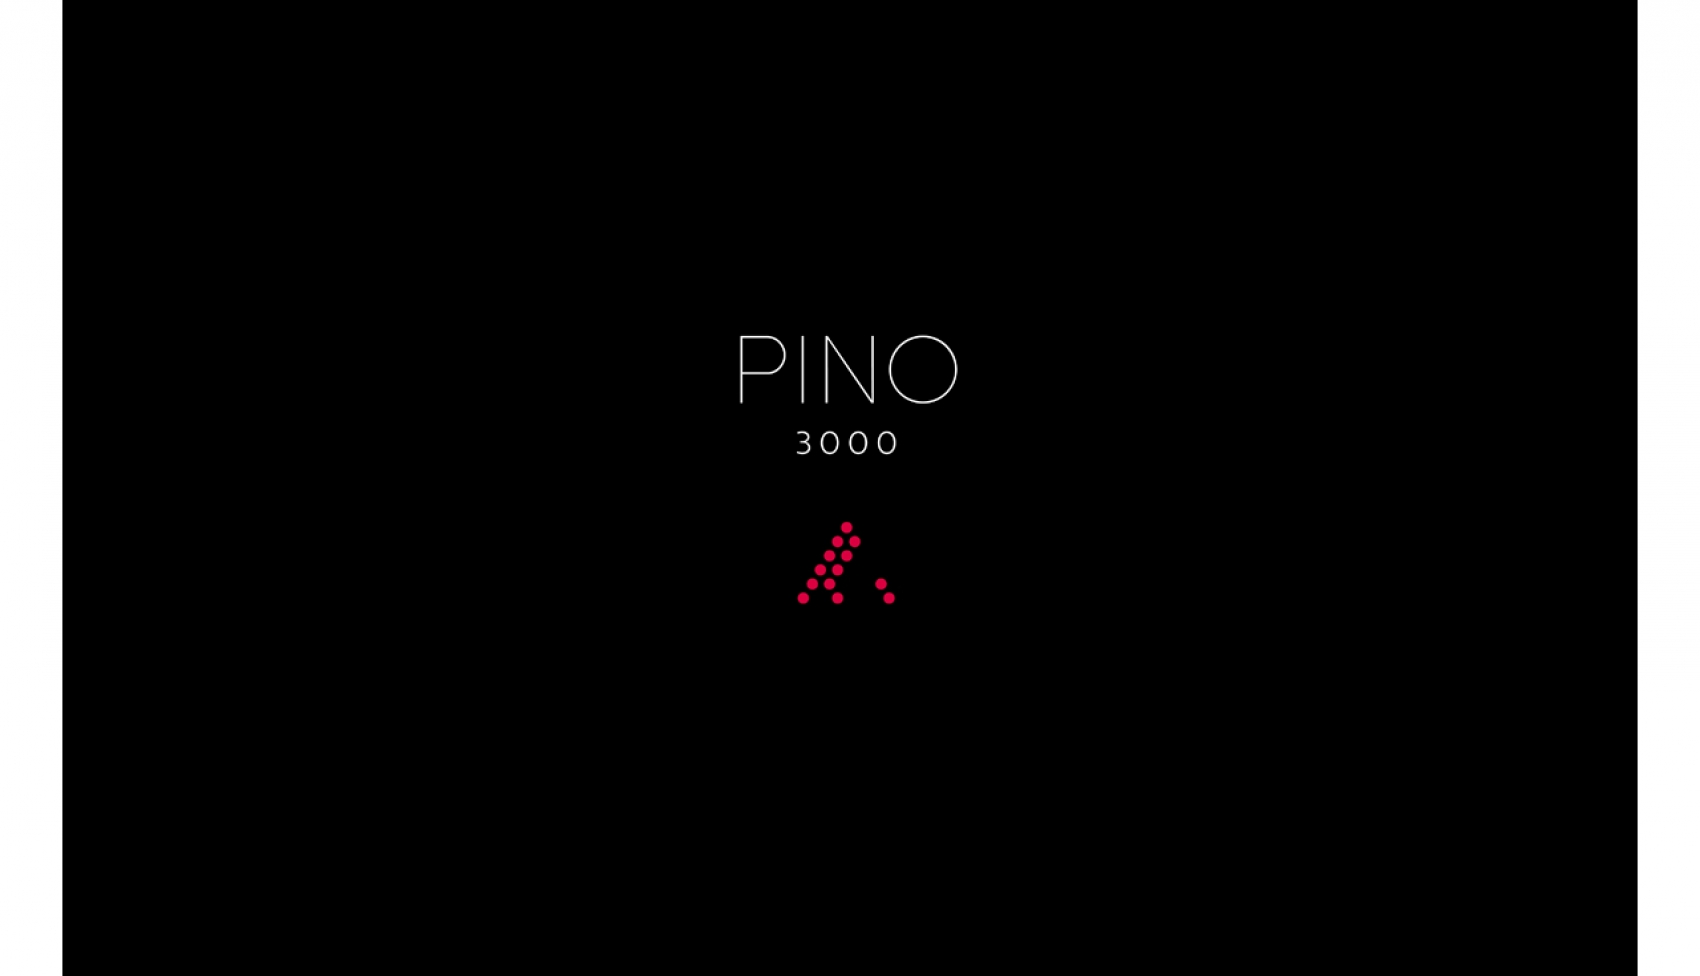 Pino 3000